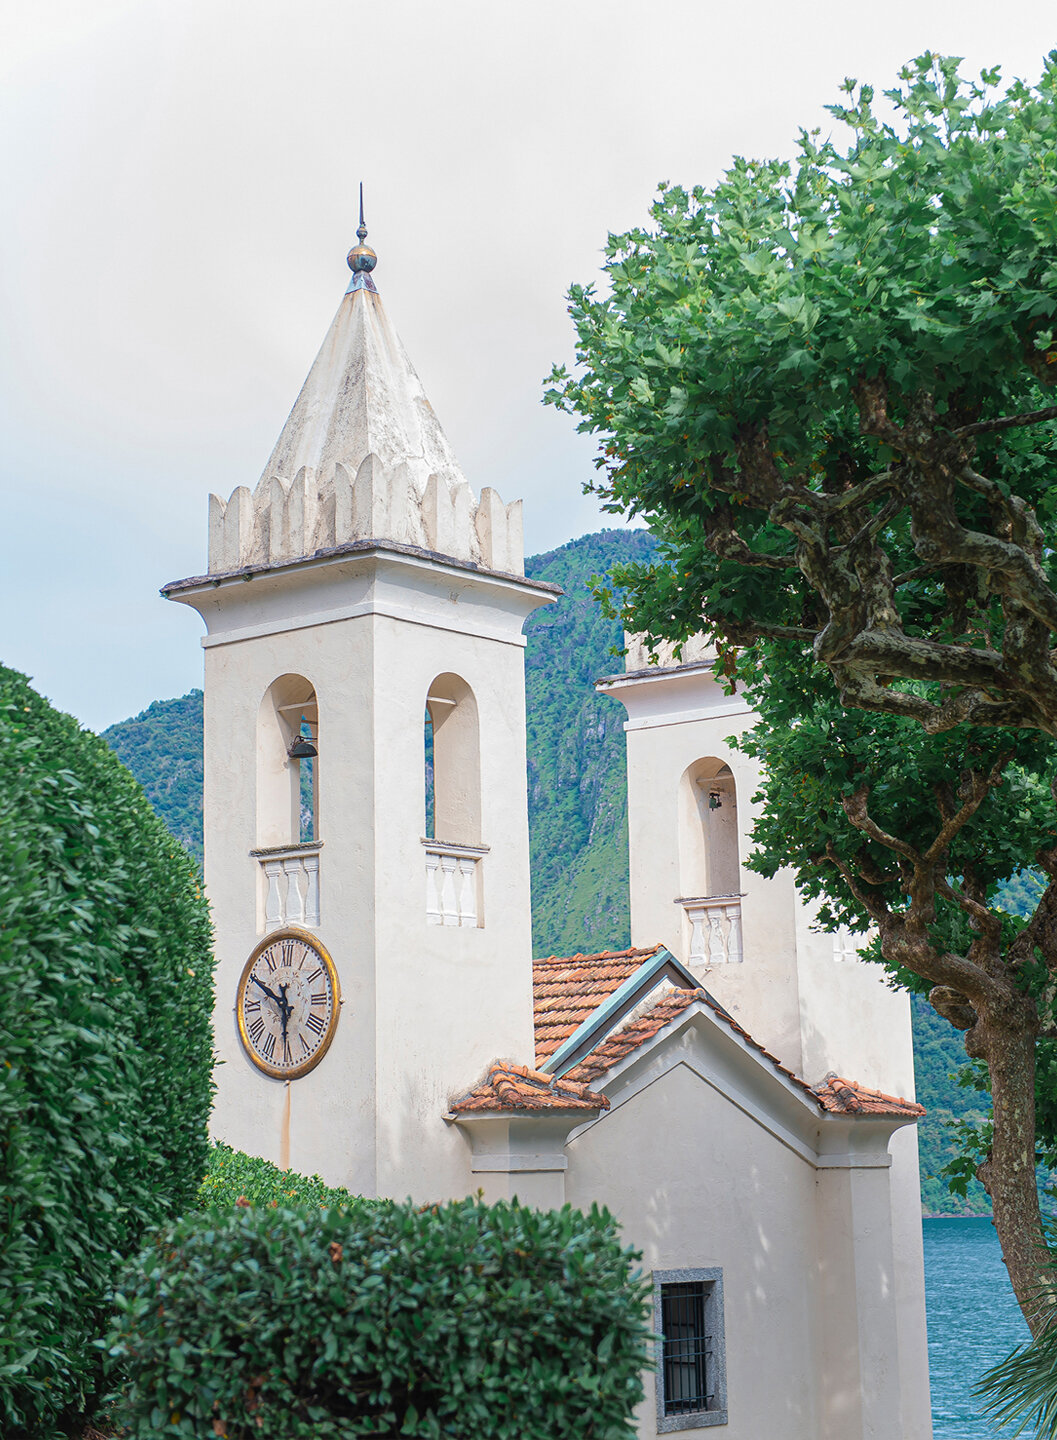 The clock tower of Villa del Balbianello